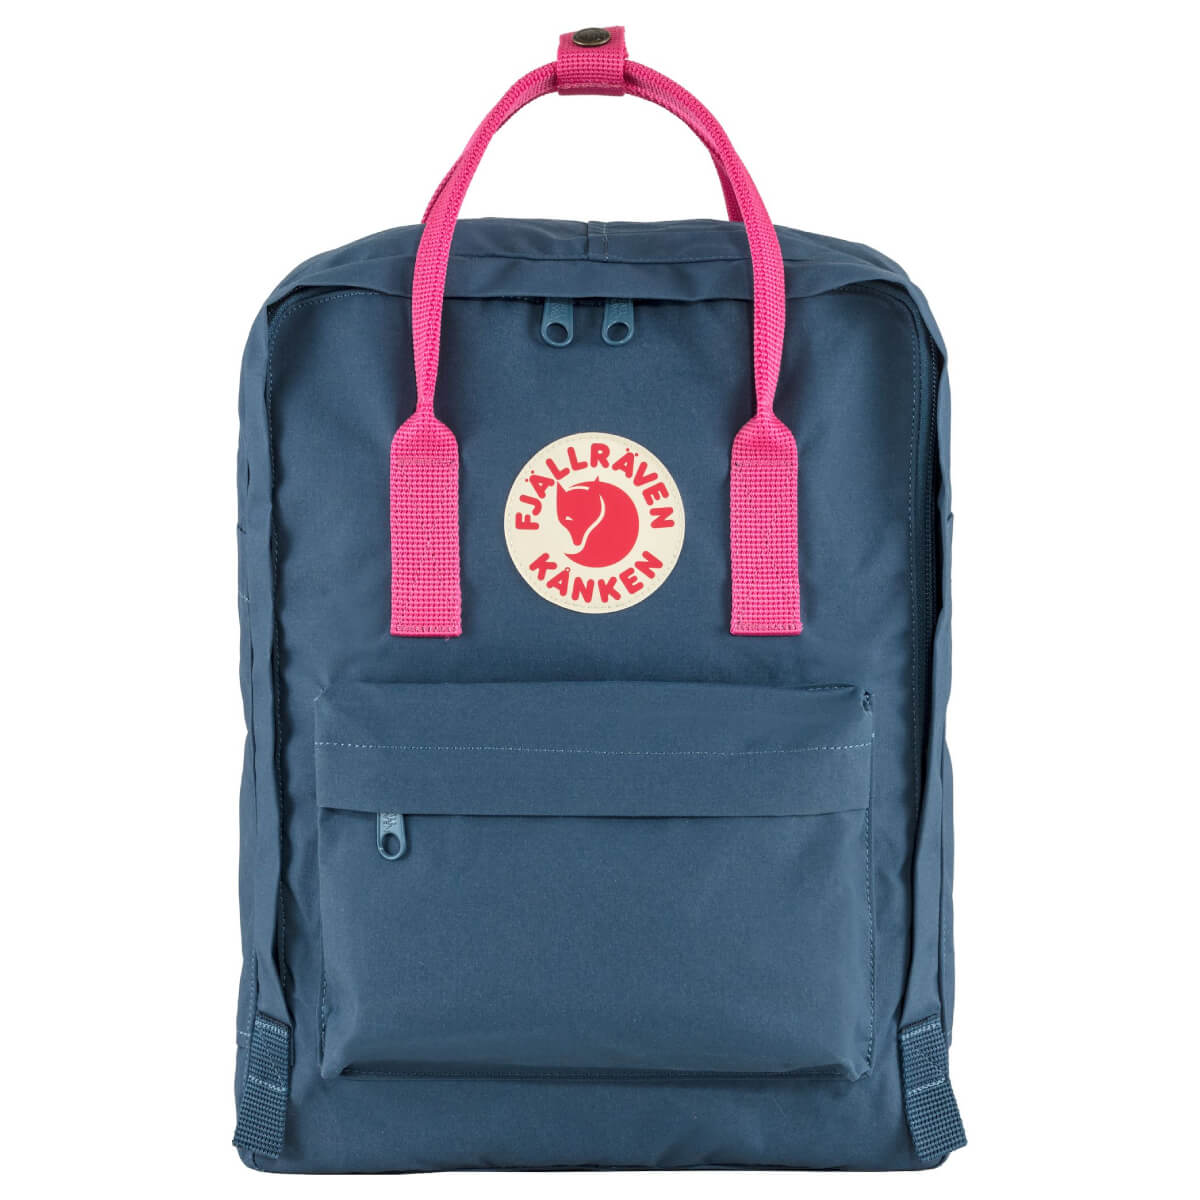 Городской рюкзак Fjallraven Kanken Royal Blue/Flamingo Pink 16 л 23510.540-450